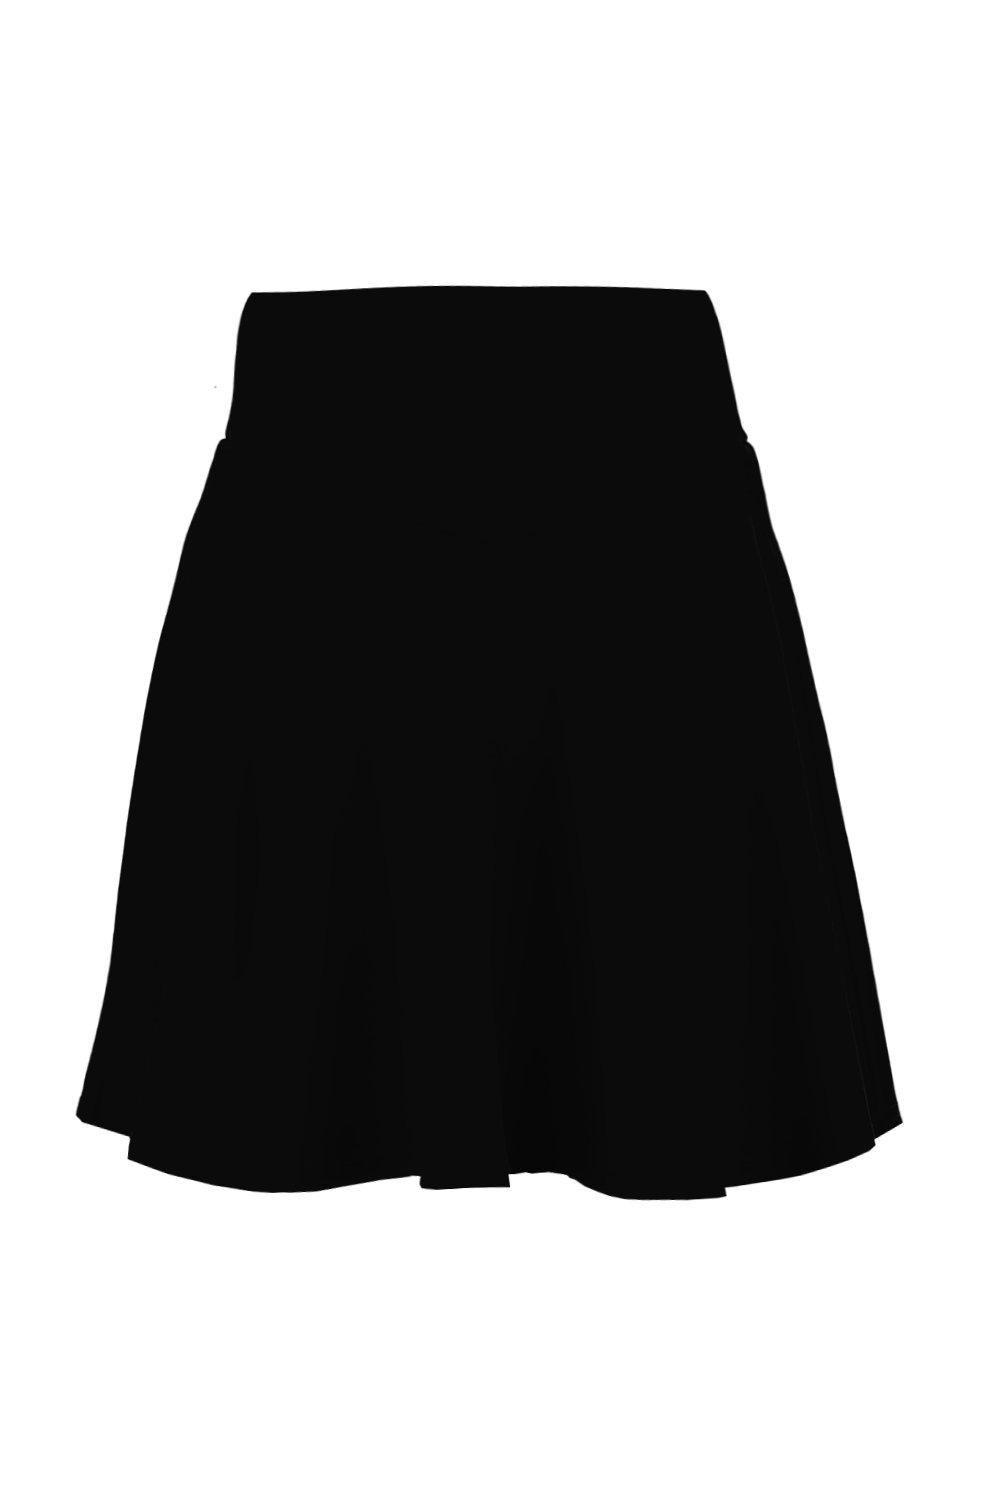 Amala Highwaist Fit & Flare Mini Skirt